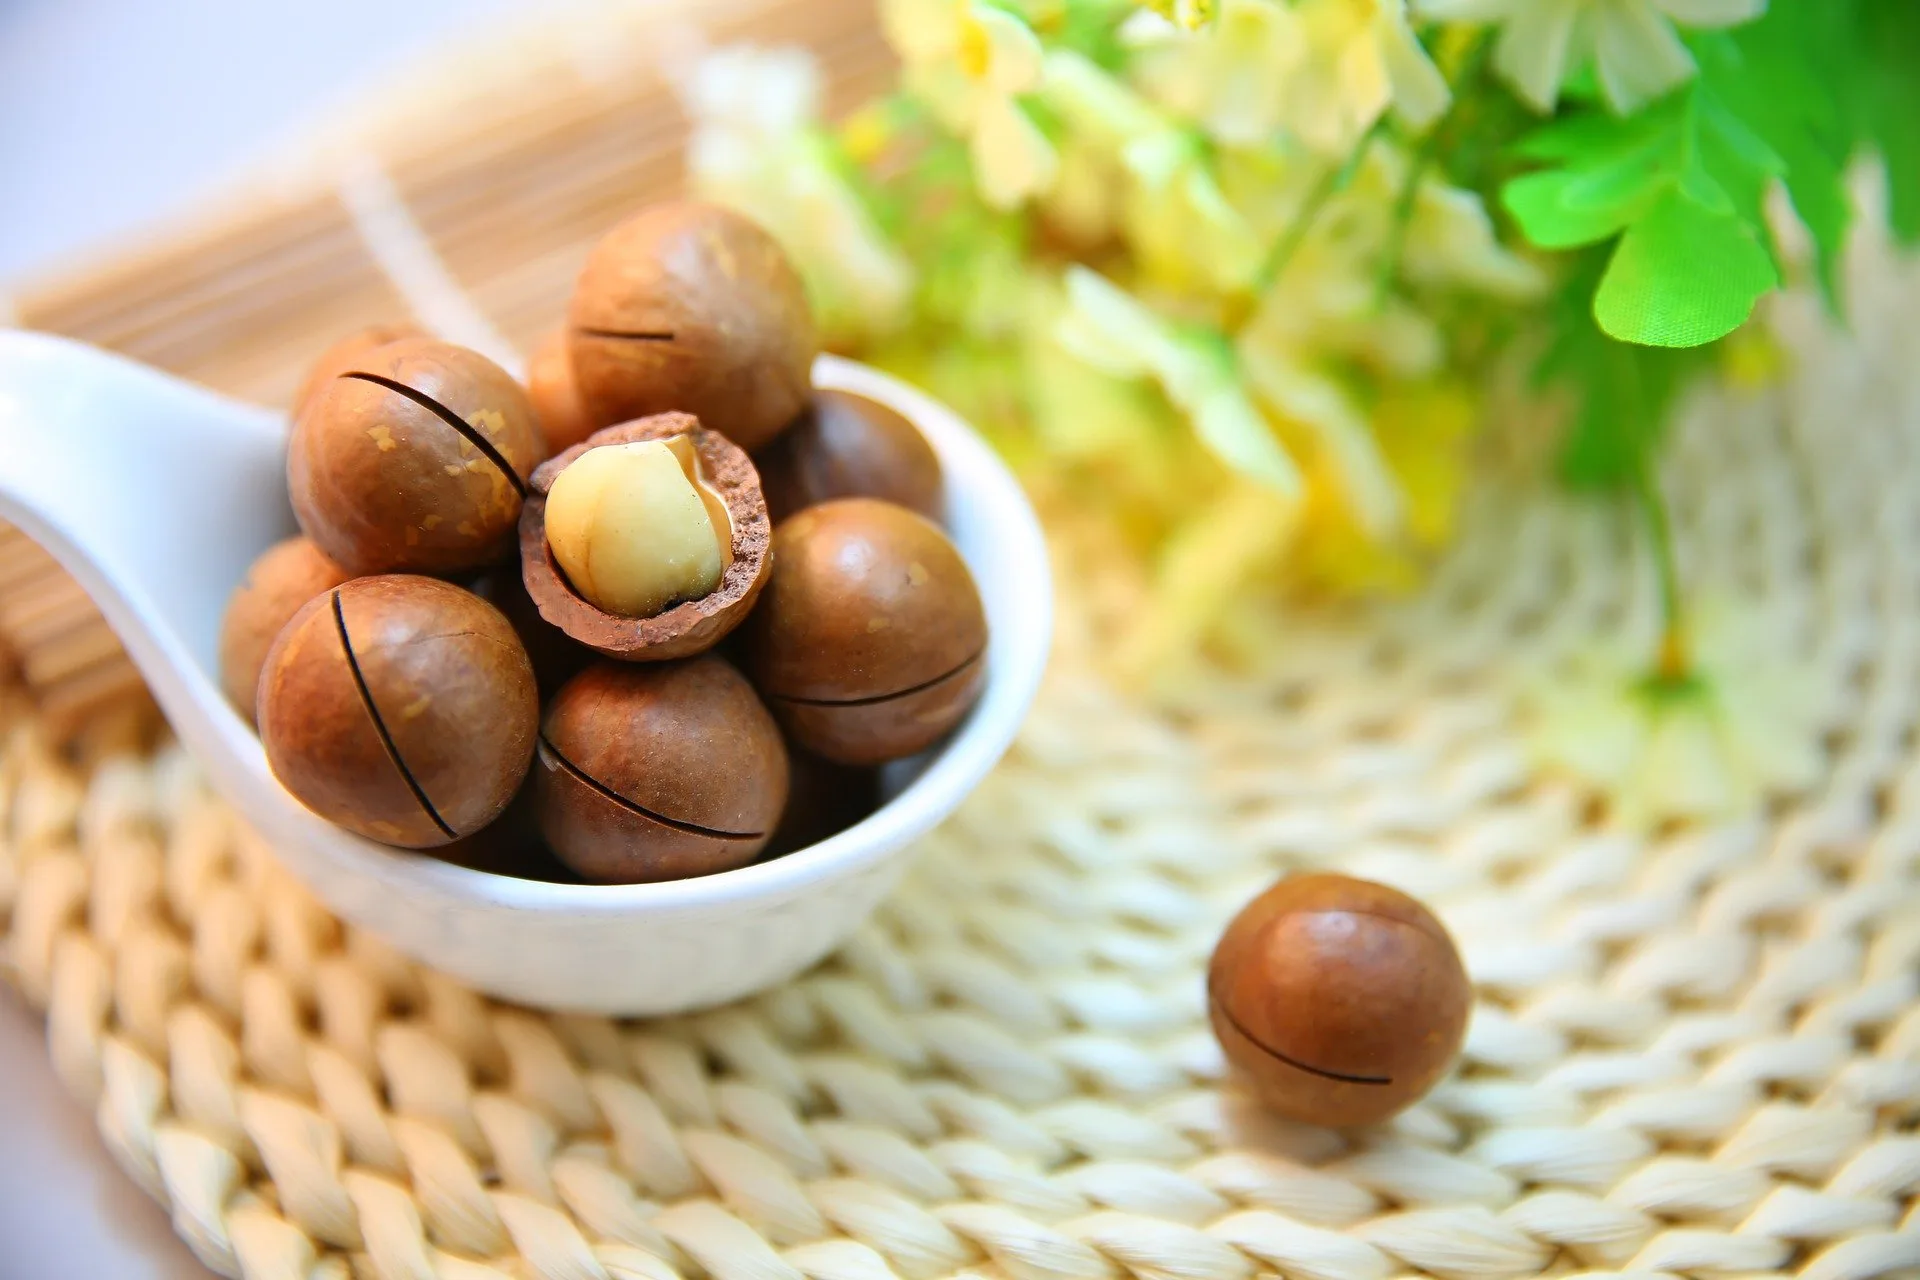 The Top 5 Best Benefits of Macadamia Nuts